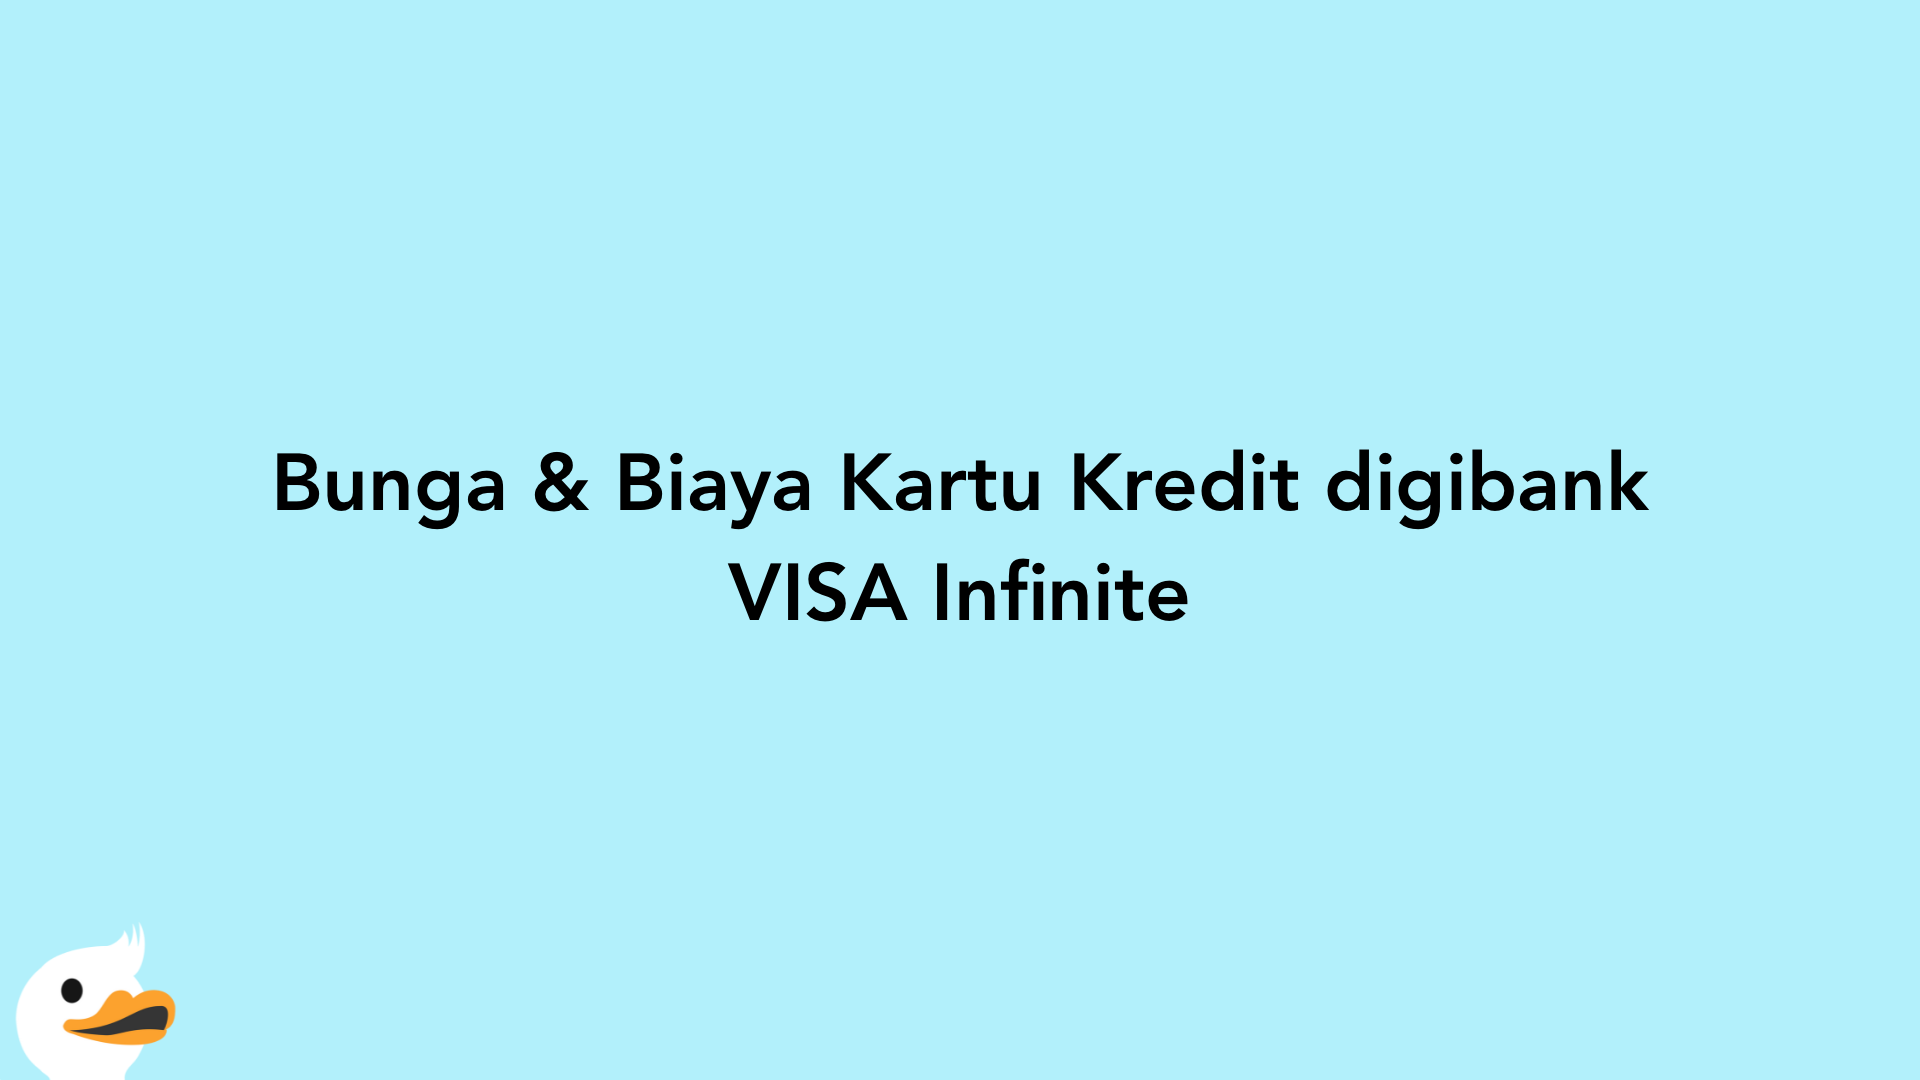 Bunga & Biaya Kartu Kredit digibank VISA Infinite